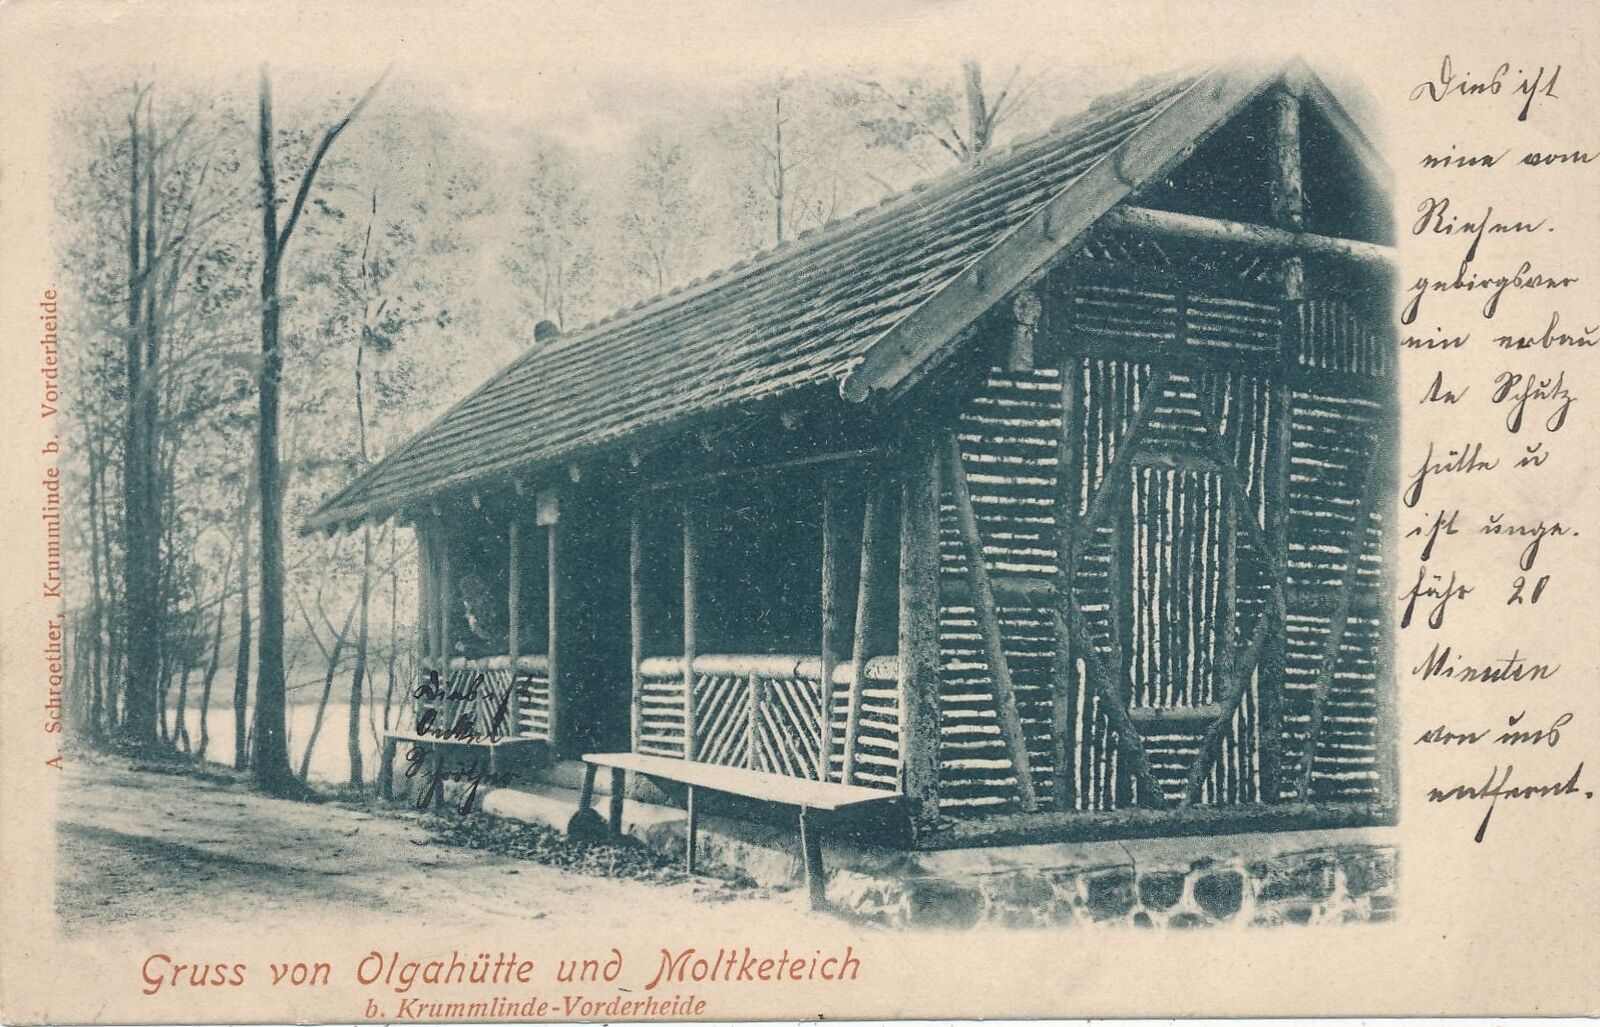 GERMANY - Gruss von Olgahutte und Moltketeich Postcard - udb (pre 1908)